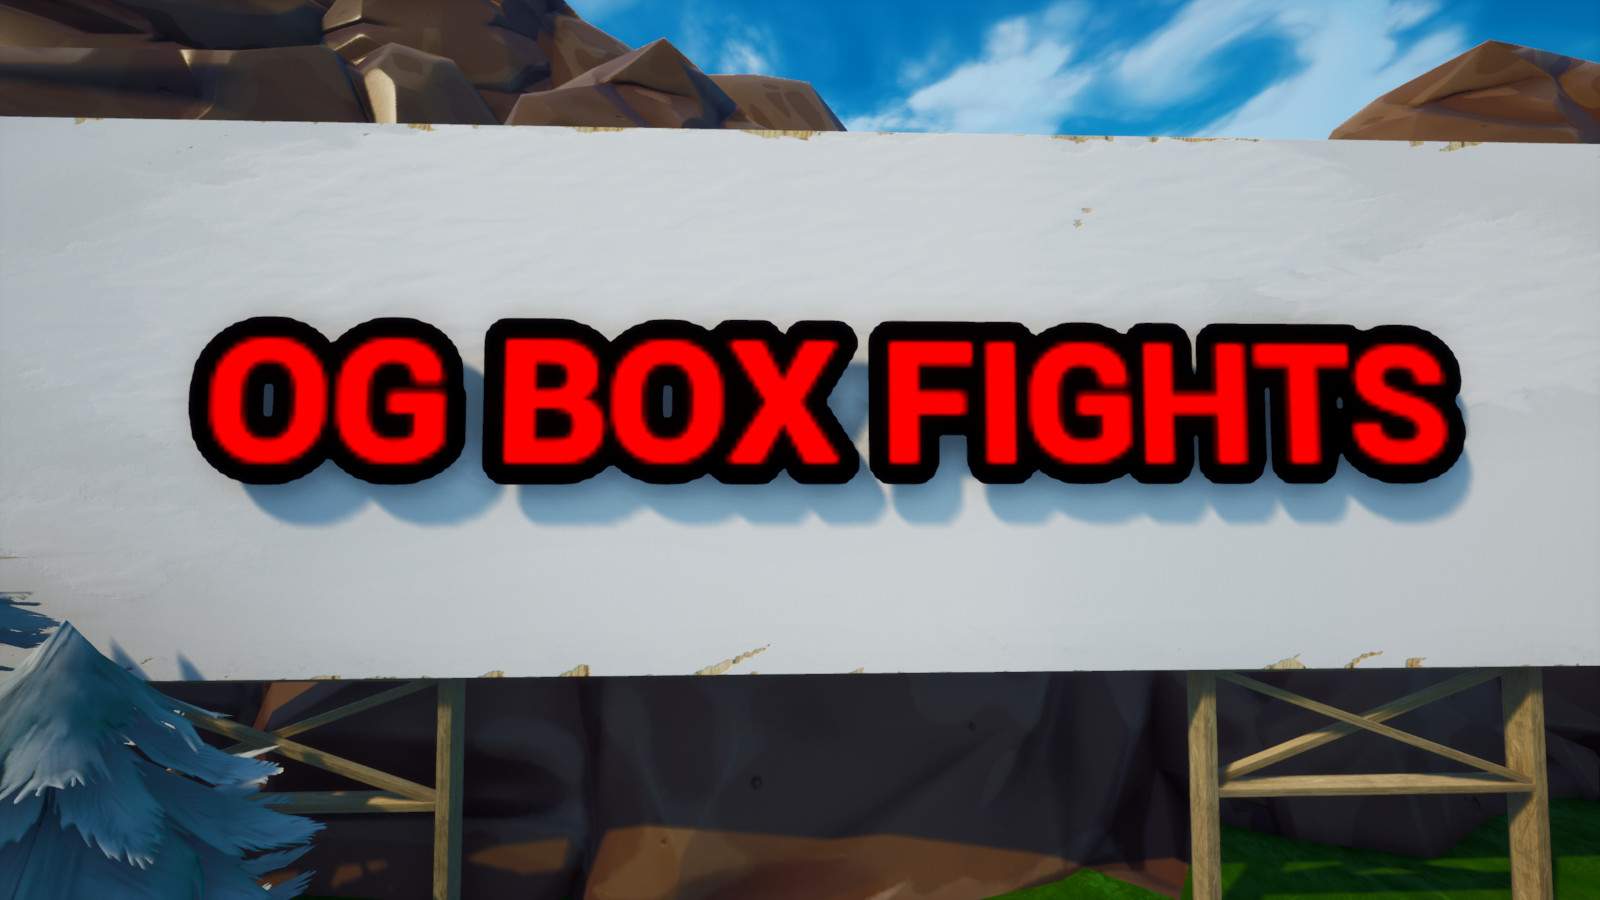 OG BOX FIGHTS!